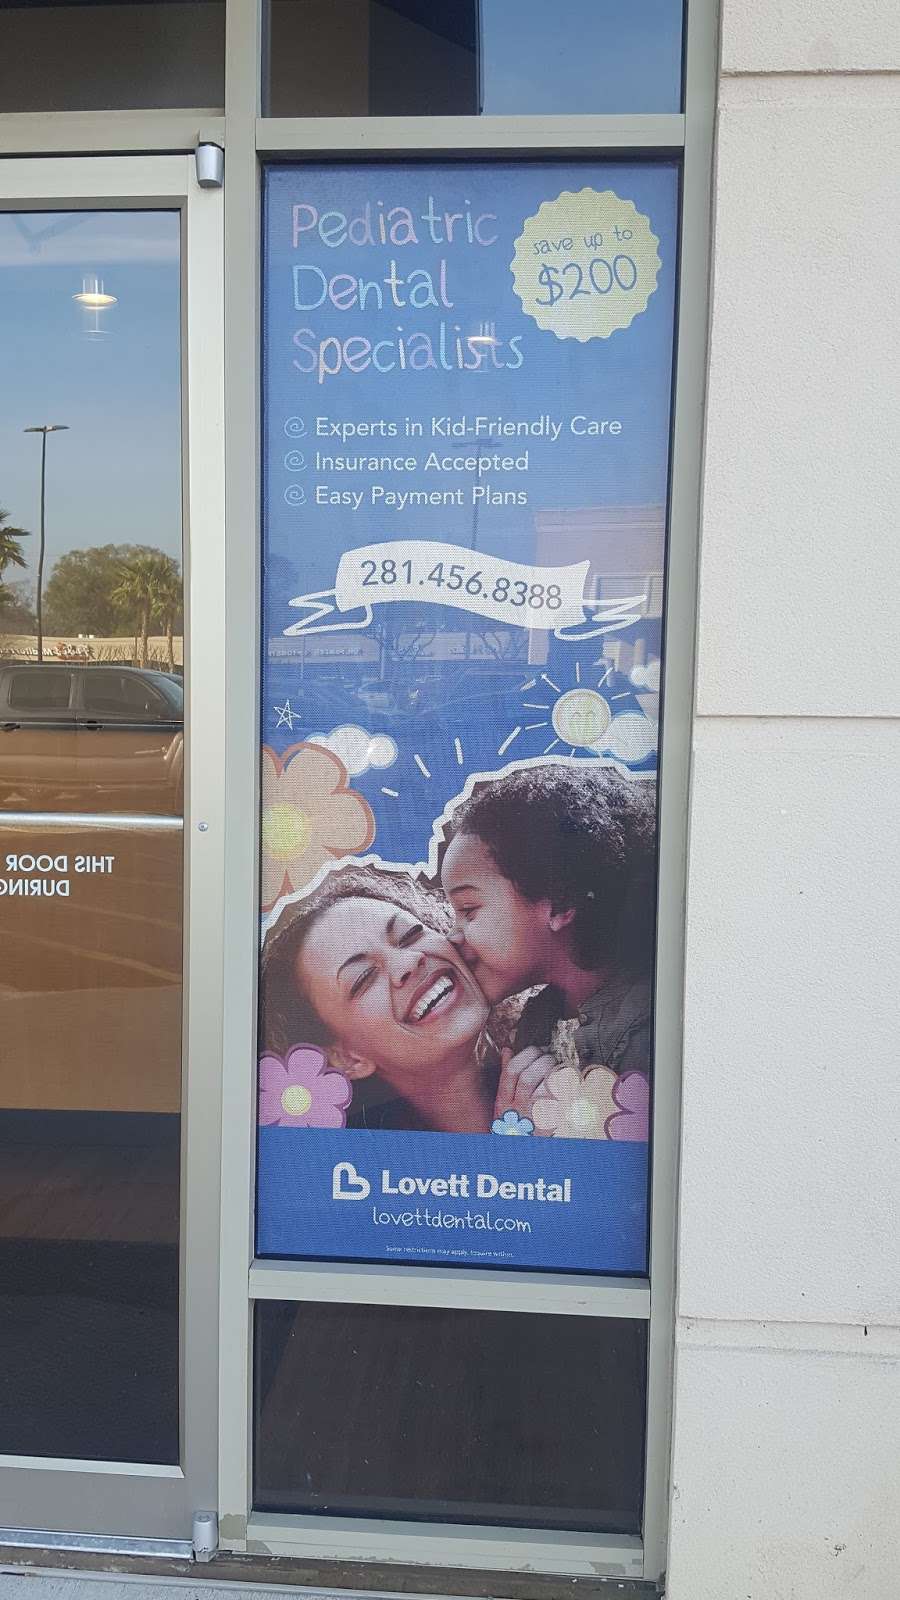 Lovett Dental | 650 meyerland plaza mall, Houston, TX 77096, USA | Phone: (281) 974-3434